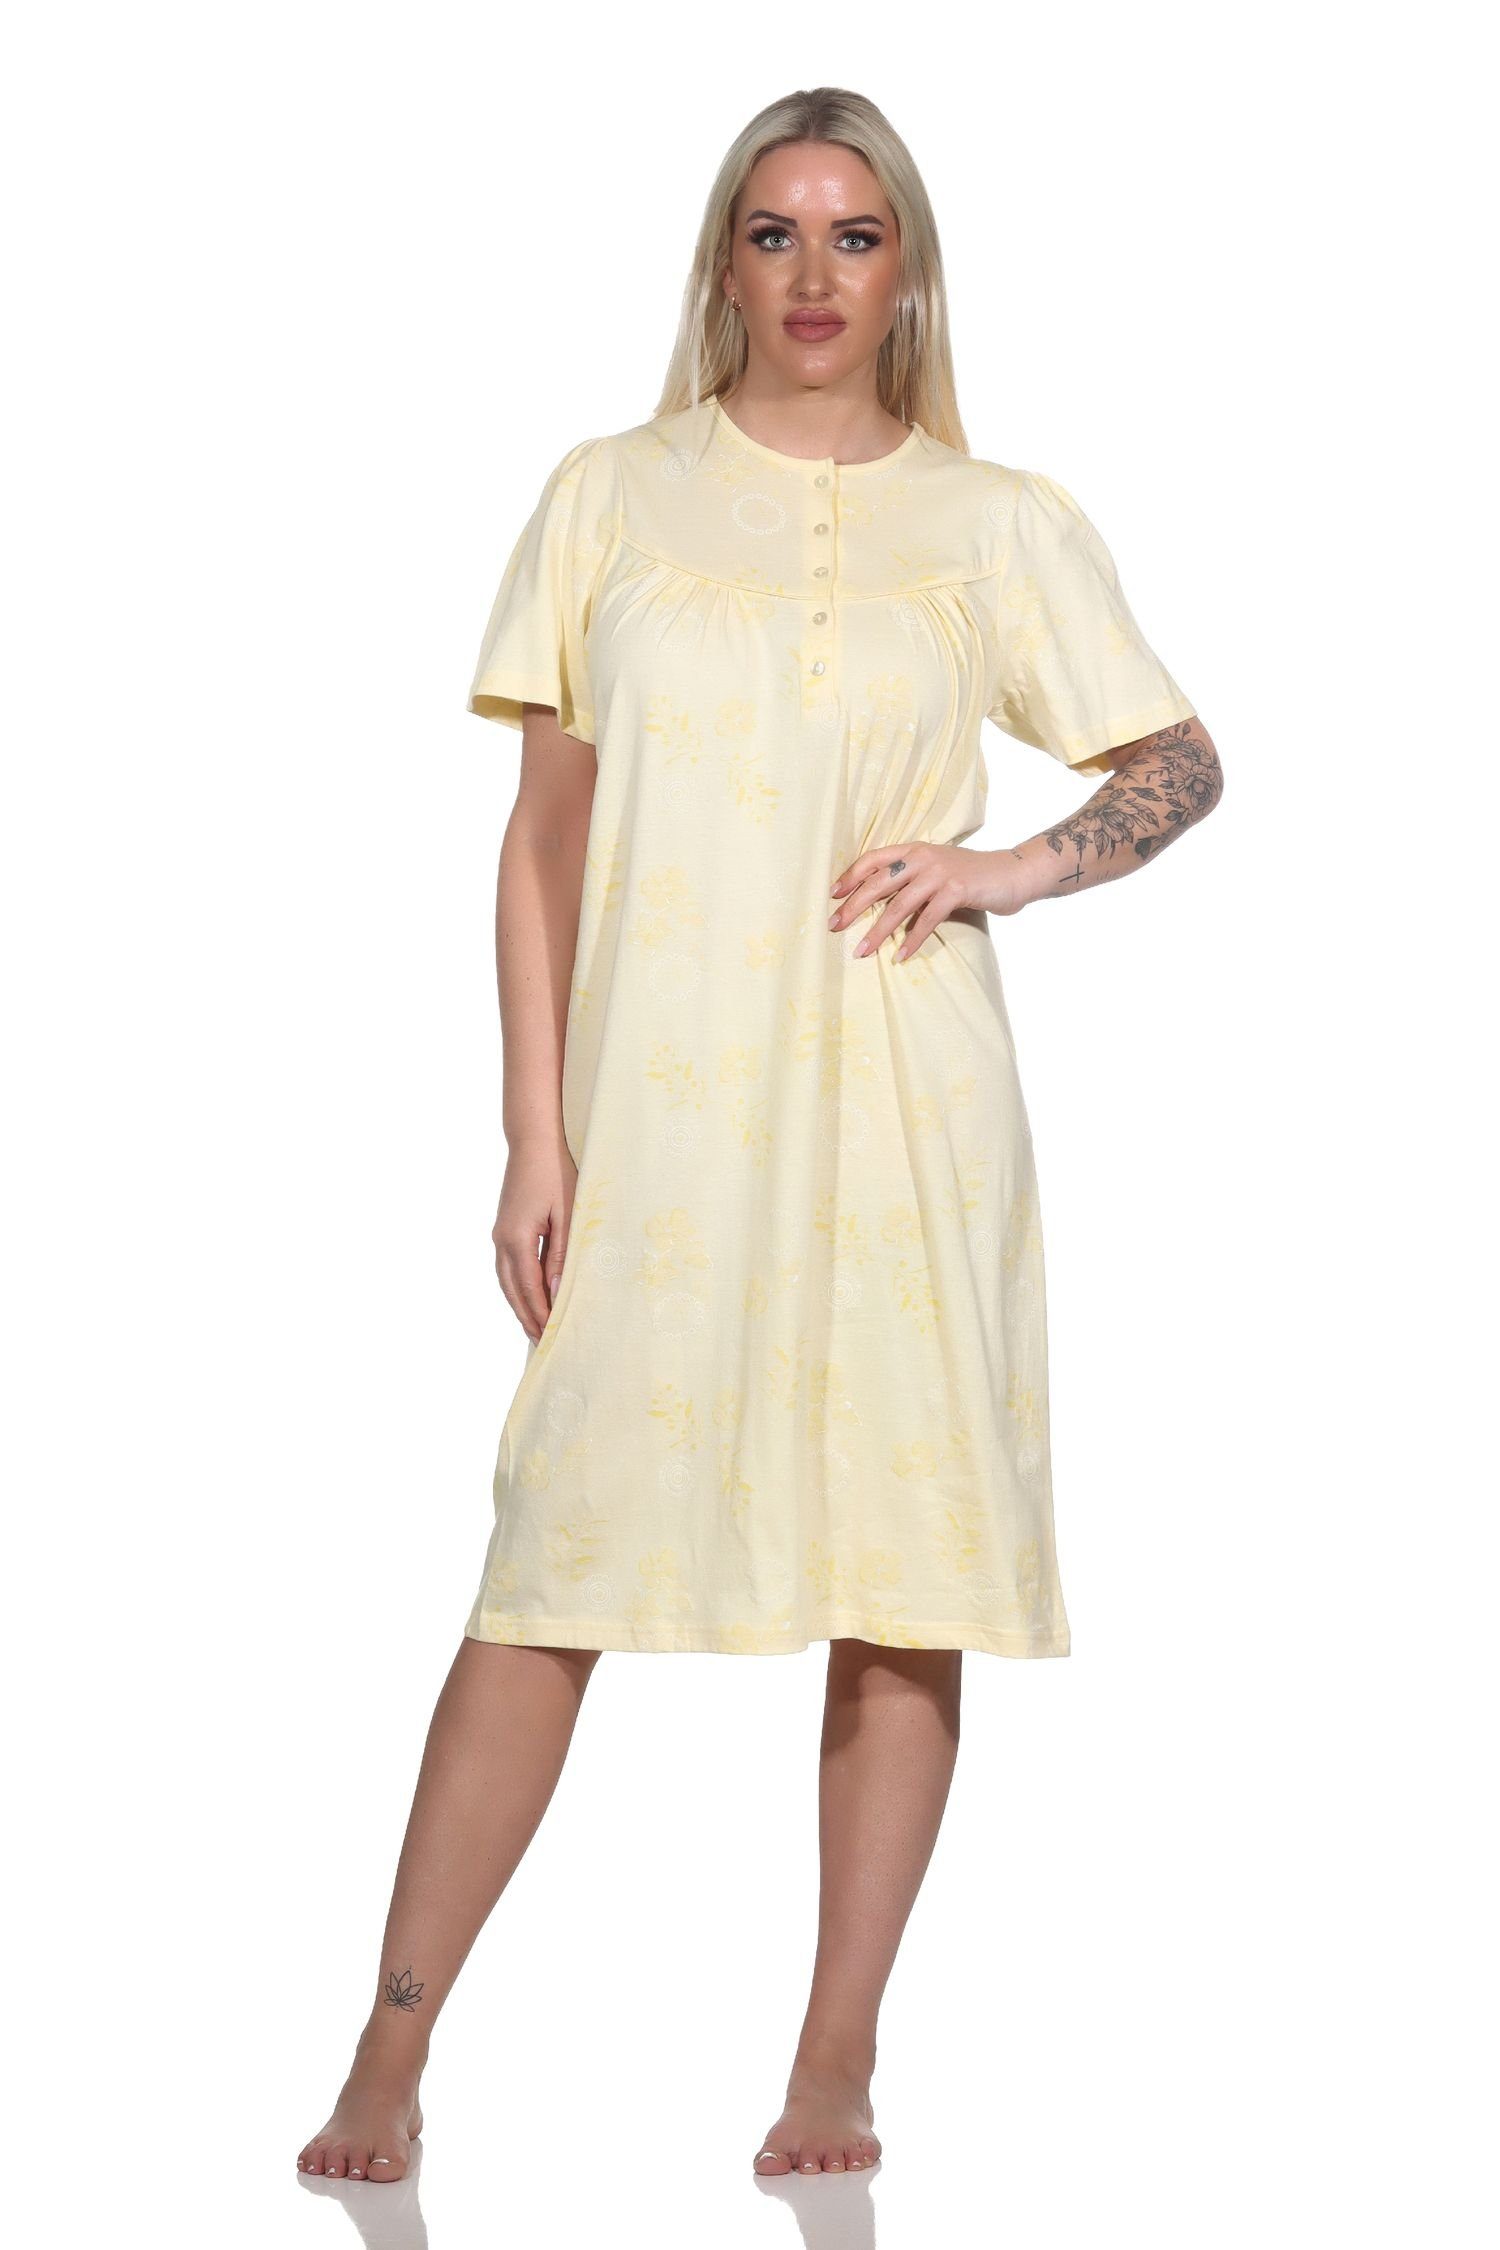 Normann Nachthemd Damen kurzarm Nachthemd im klassischen fraulichen Design vanille